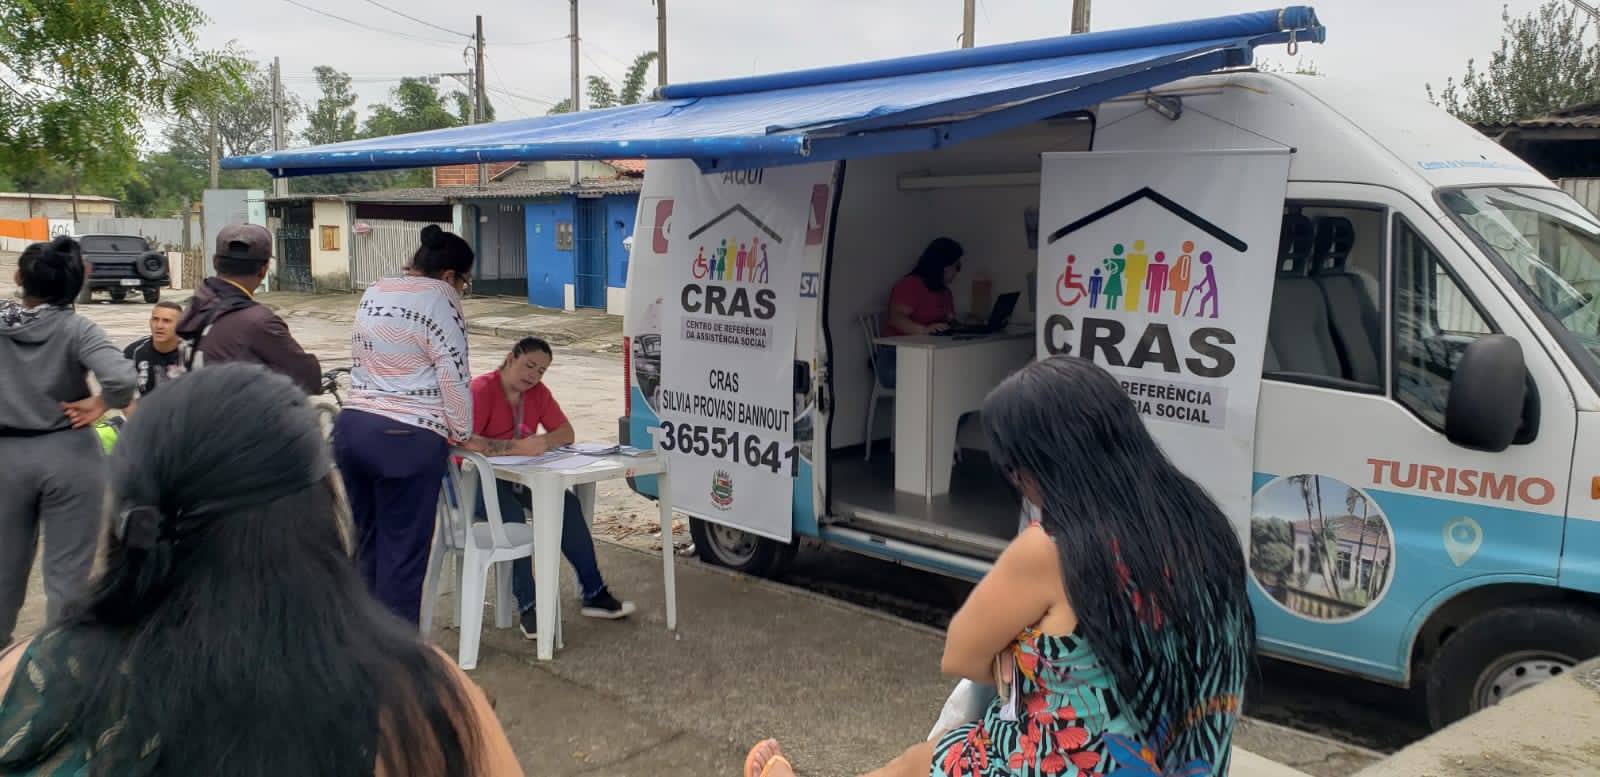 CRAS realiza a ação “O CRAS está aqui” no bairro Santa Luzia